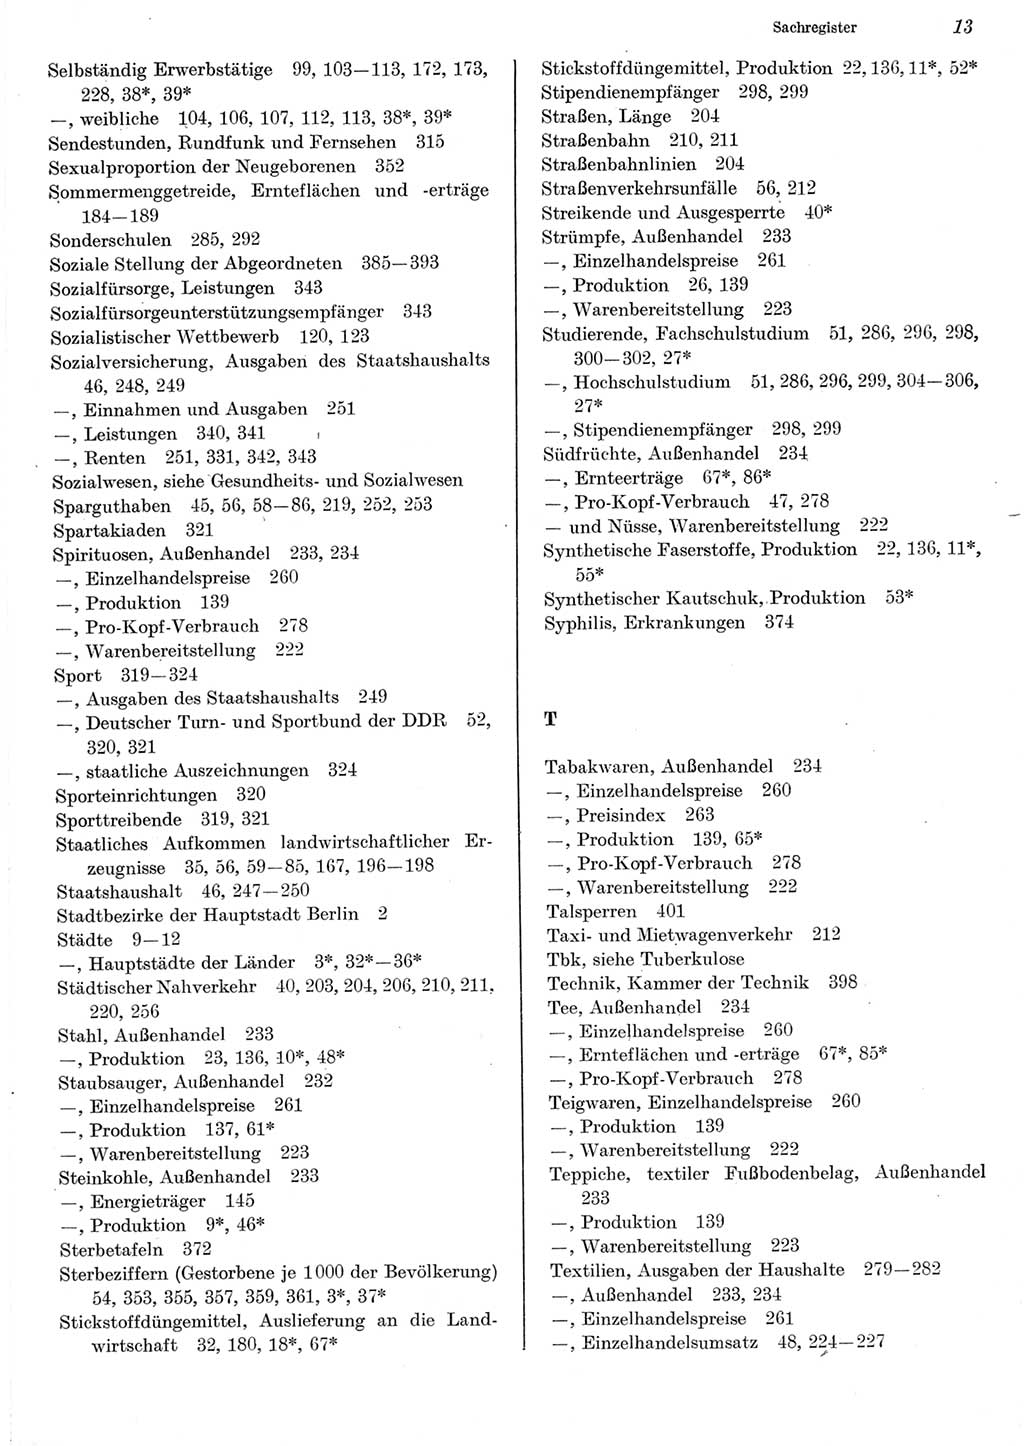 Statistisches Jahrbuch der Deutschen Demokratischen Republik (DDR) 1982, Seite 13 (Stat. Jb. DDR 1982, S. 13)